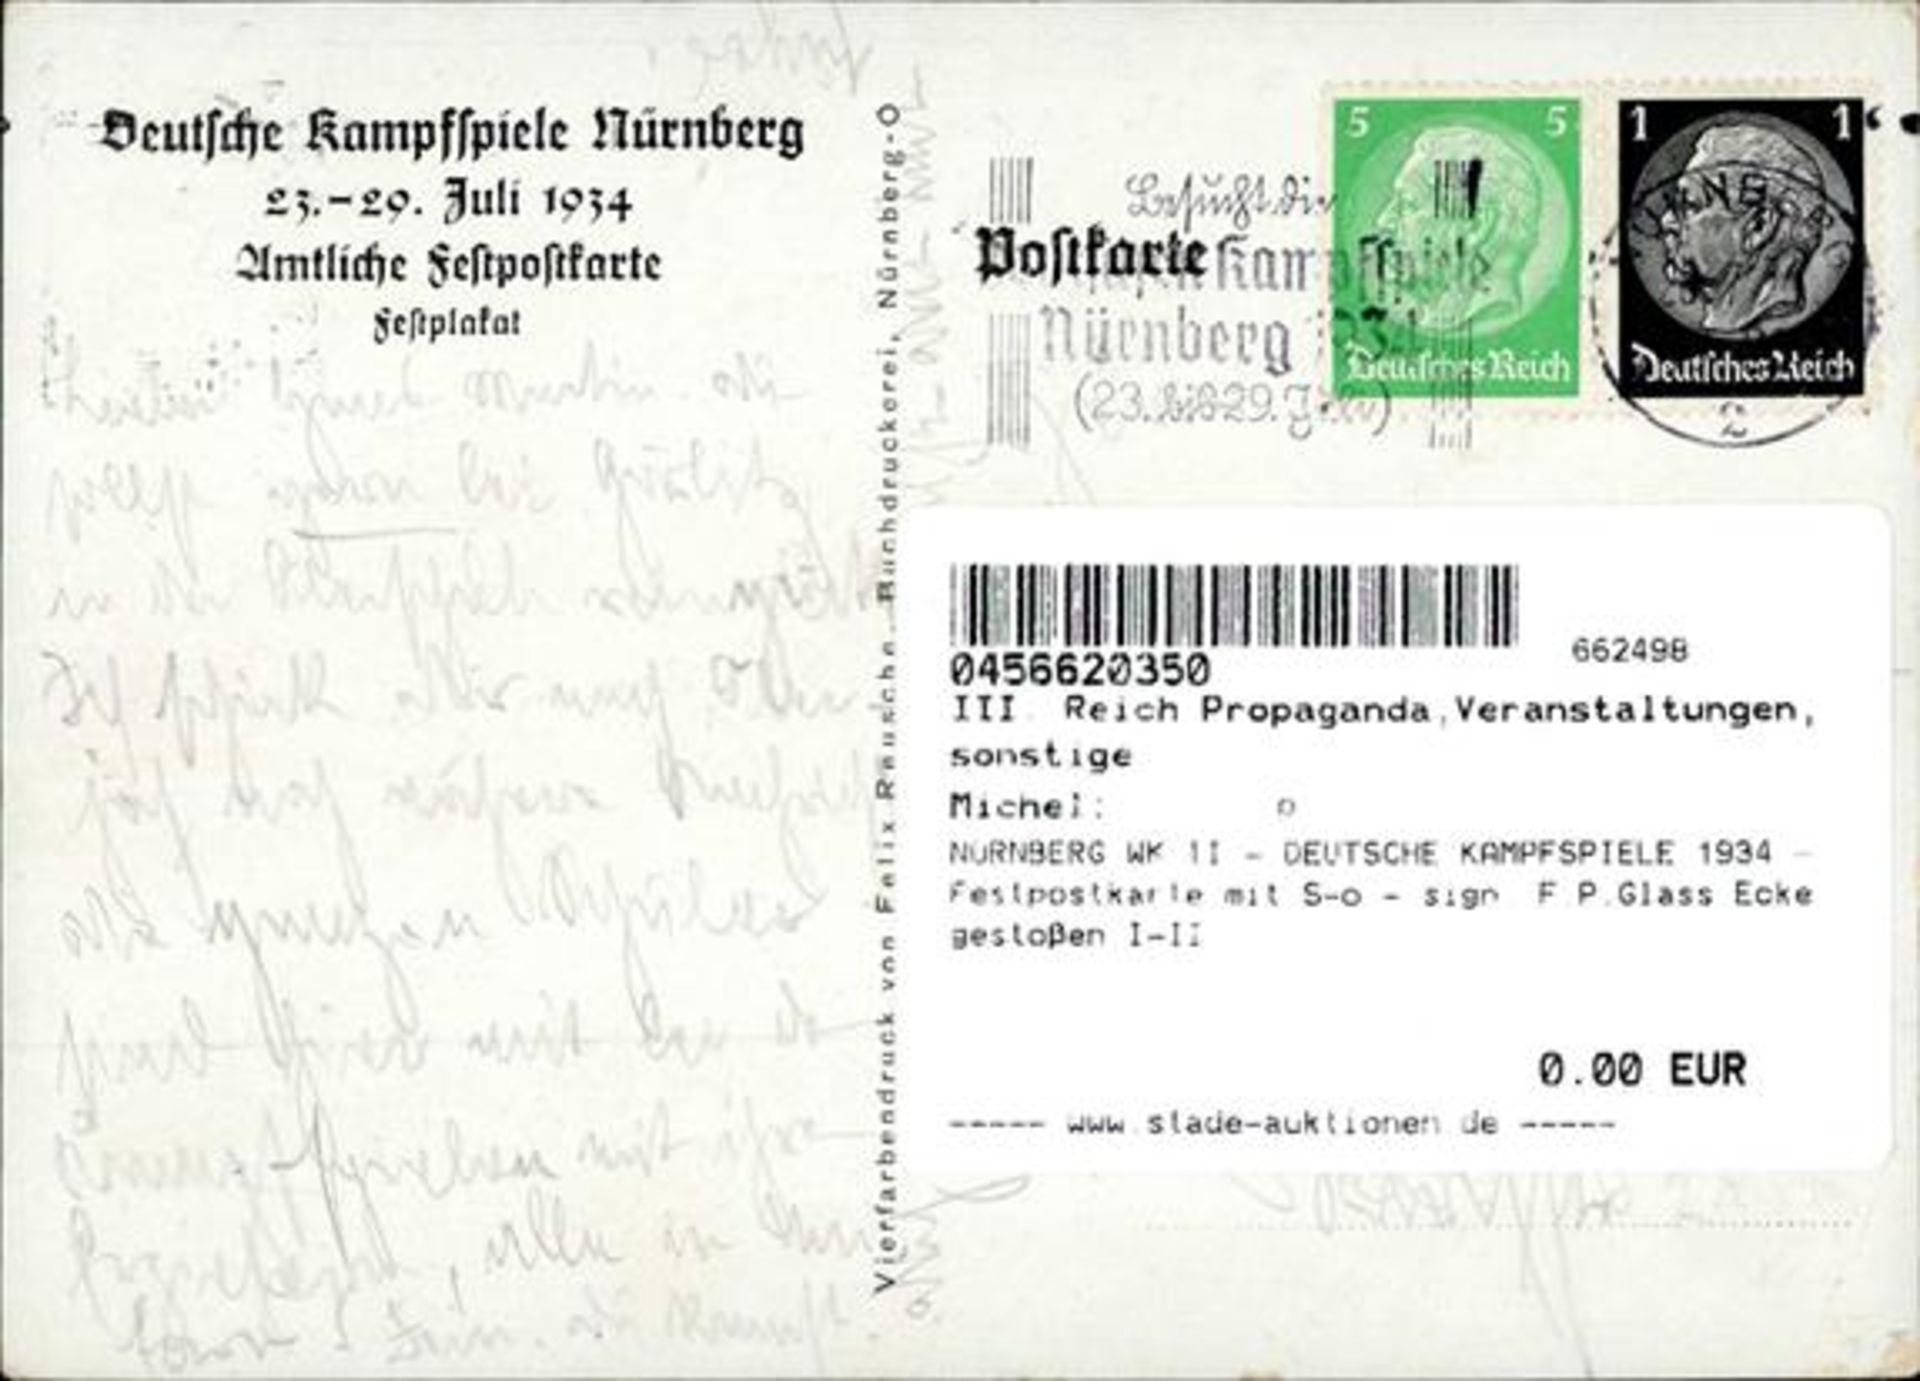 NÜRNBERG WK II - DEUTSCHE KAMPFSPIELE 1934 - Festpostkarte mit S-o - sign. F.P.Glass Ecke gestoßen - Bild 2 aus 2